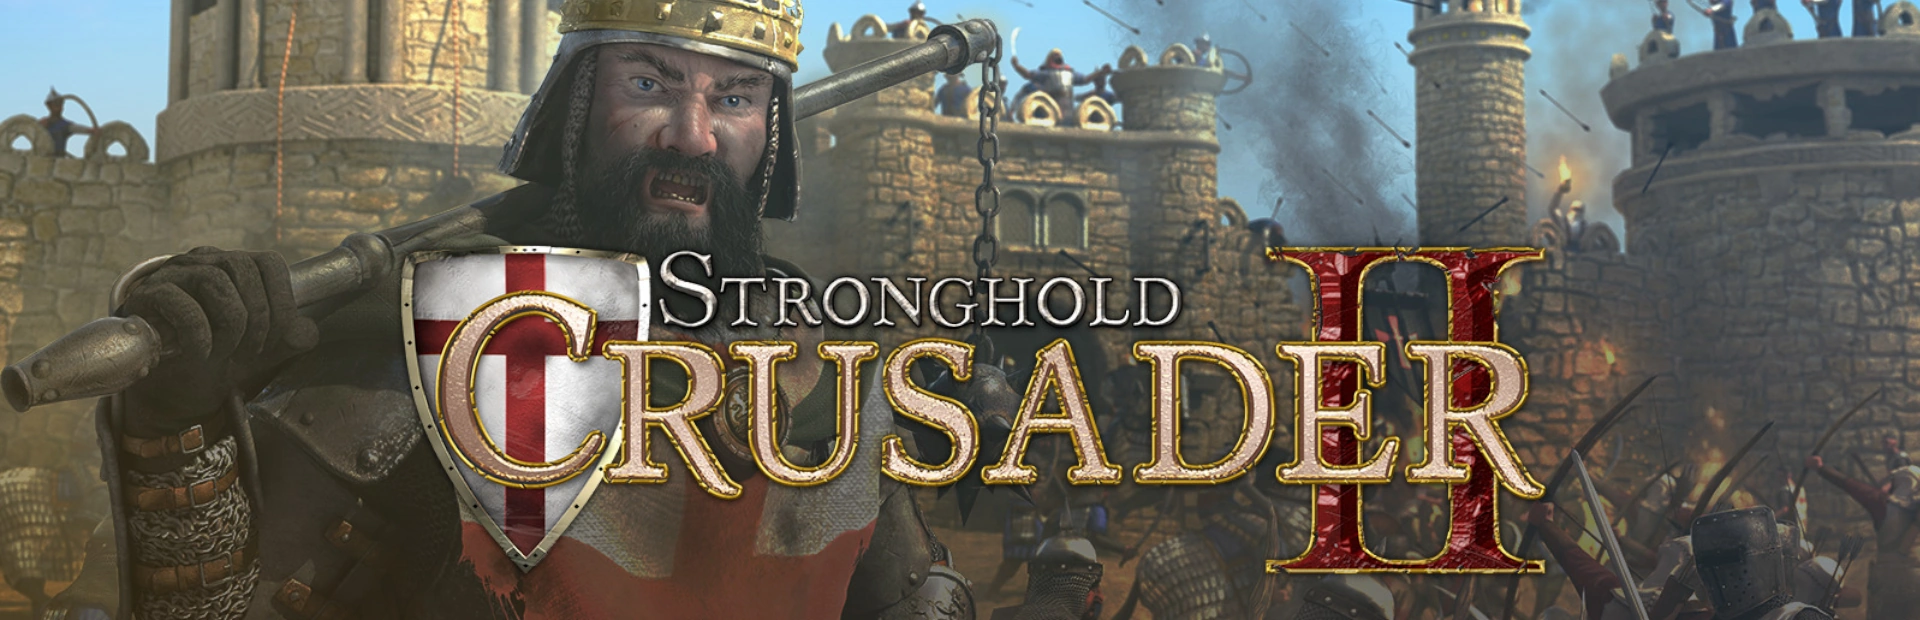 دانلود بازی Stronghold Crusader 2 برای کامپیوتر | گیمباتو